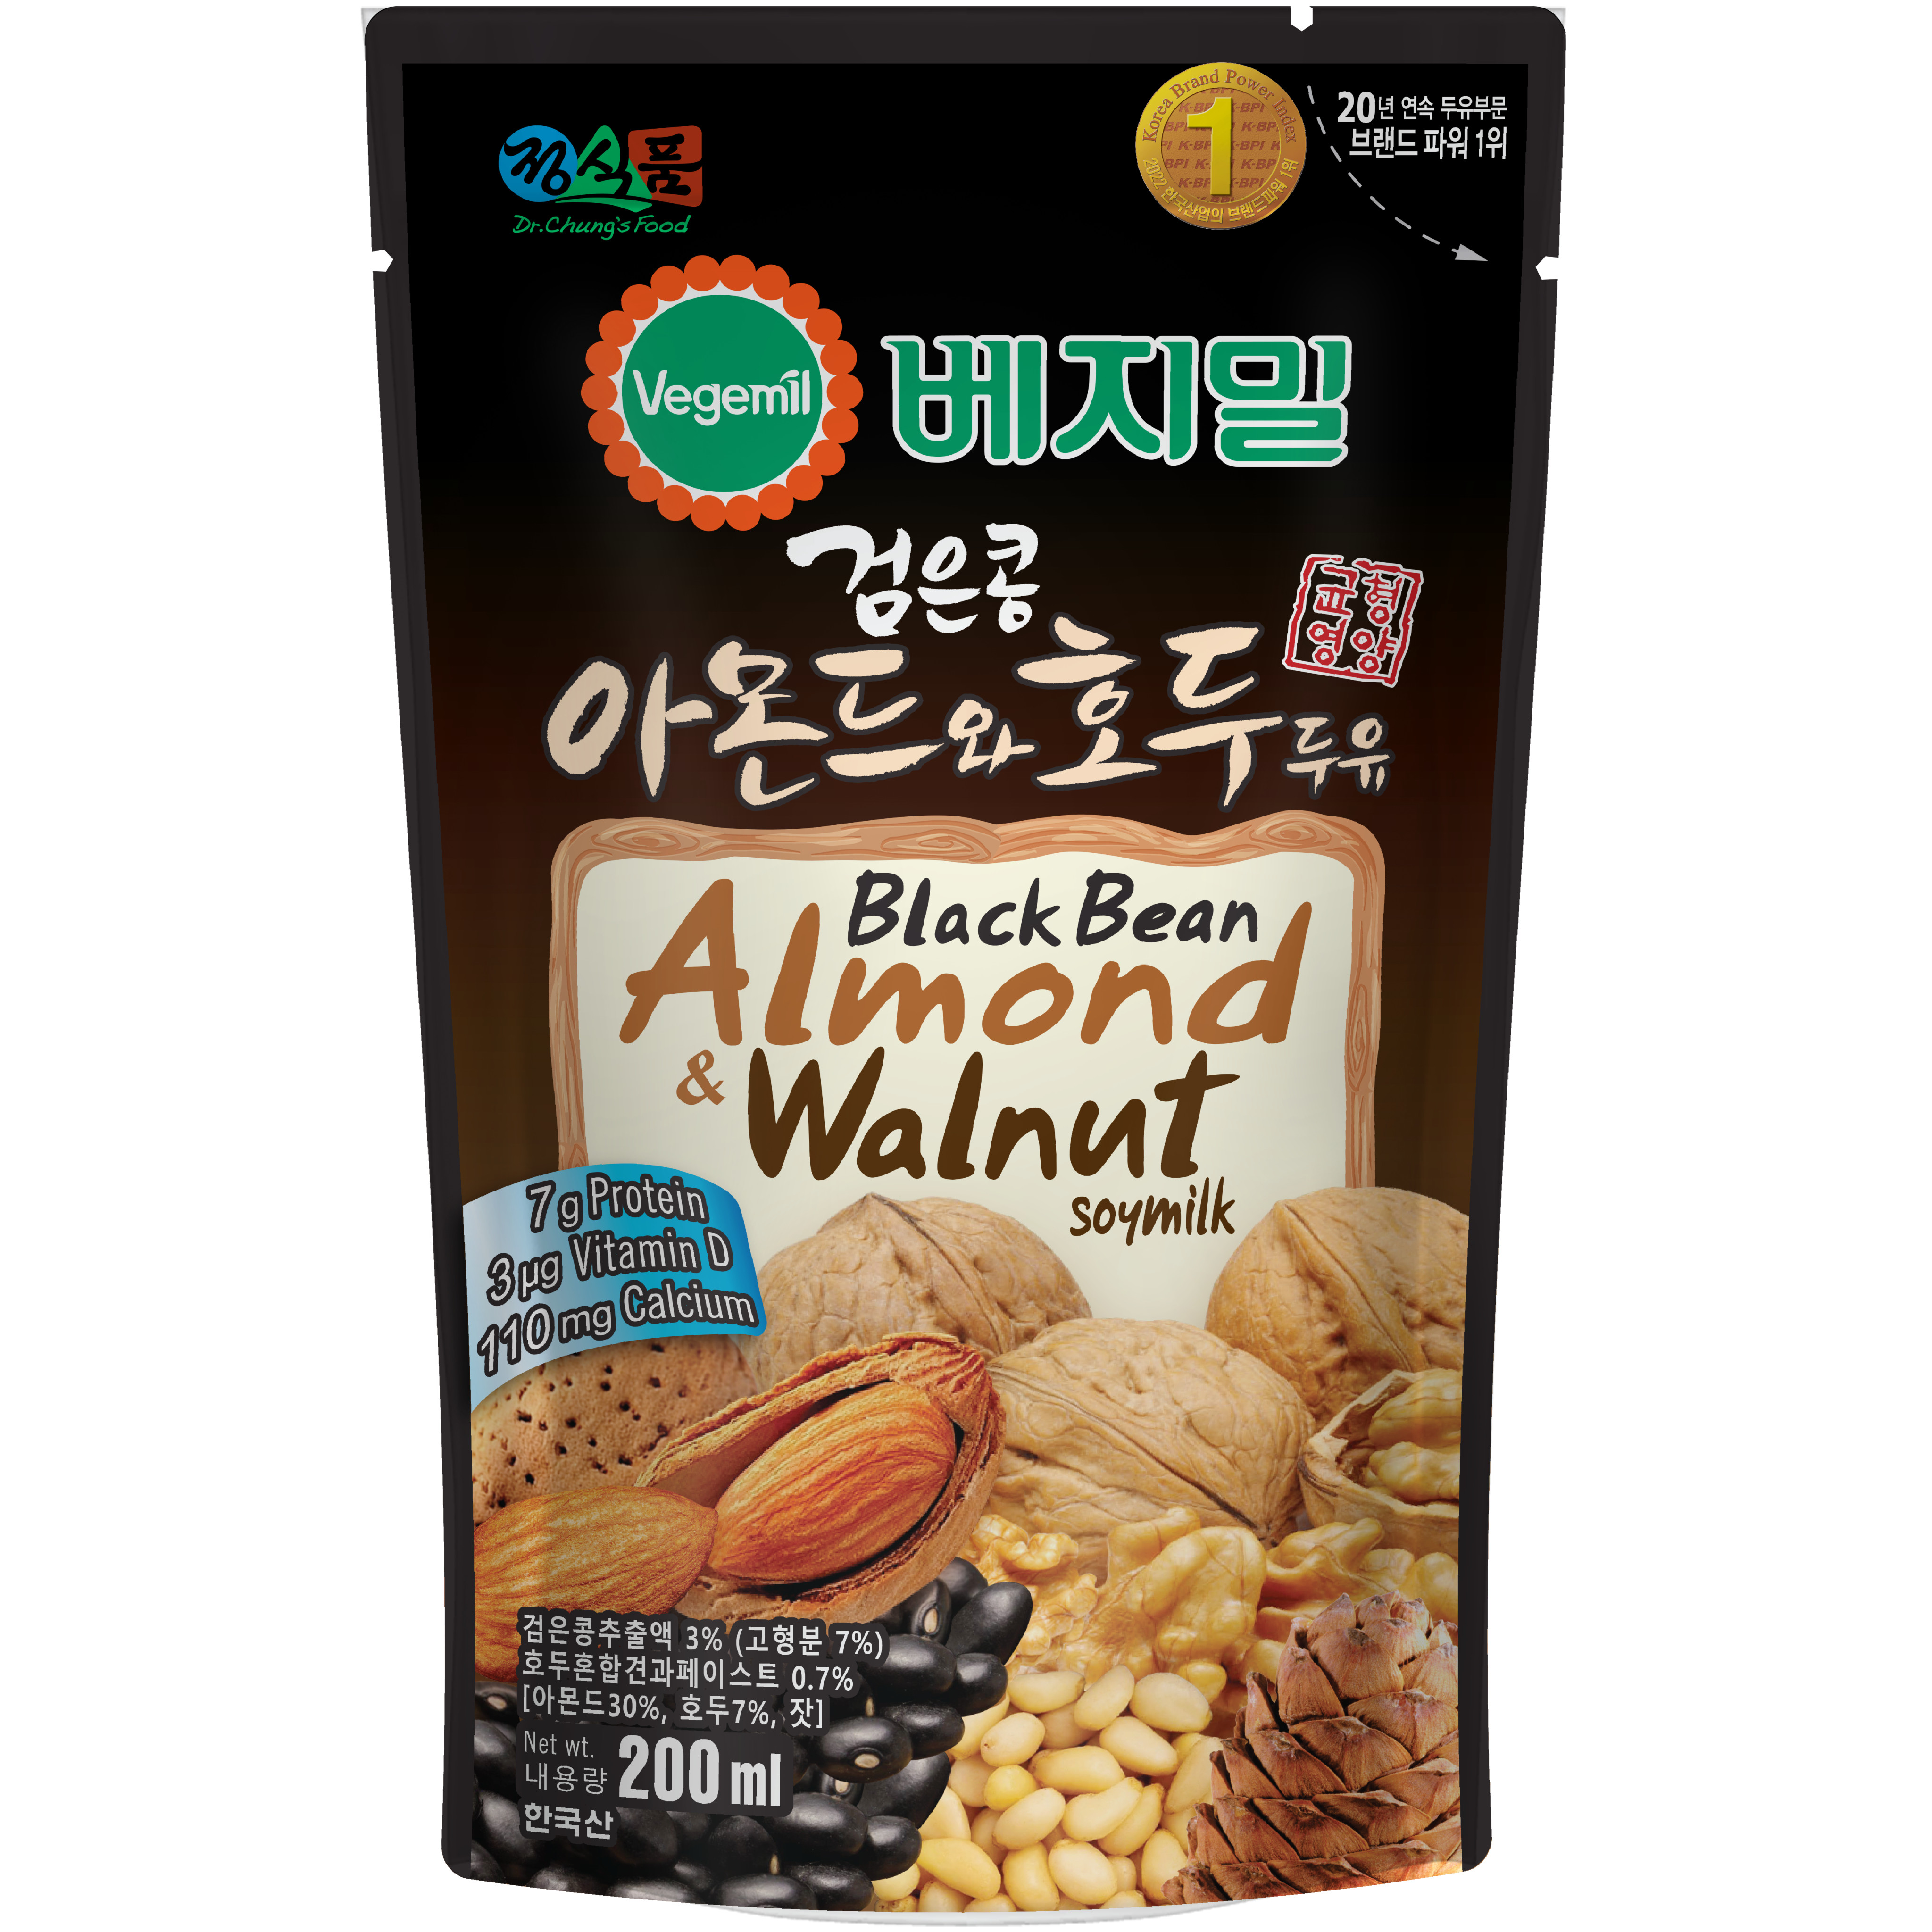 Thùng 15 Túi Sữa Hạt Đậu Đen Óc Chó Hạnh Nhân Vegemil 200ml (Black Bean, Almond & Walnut)